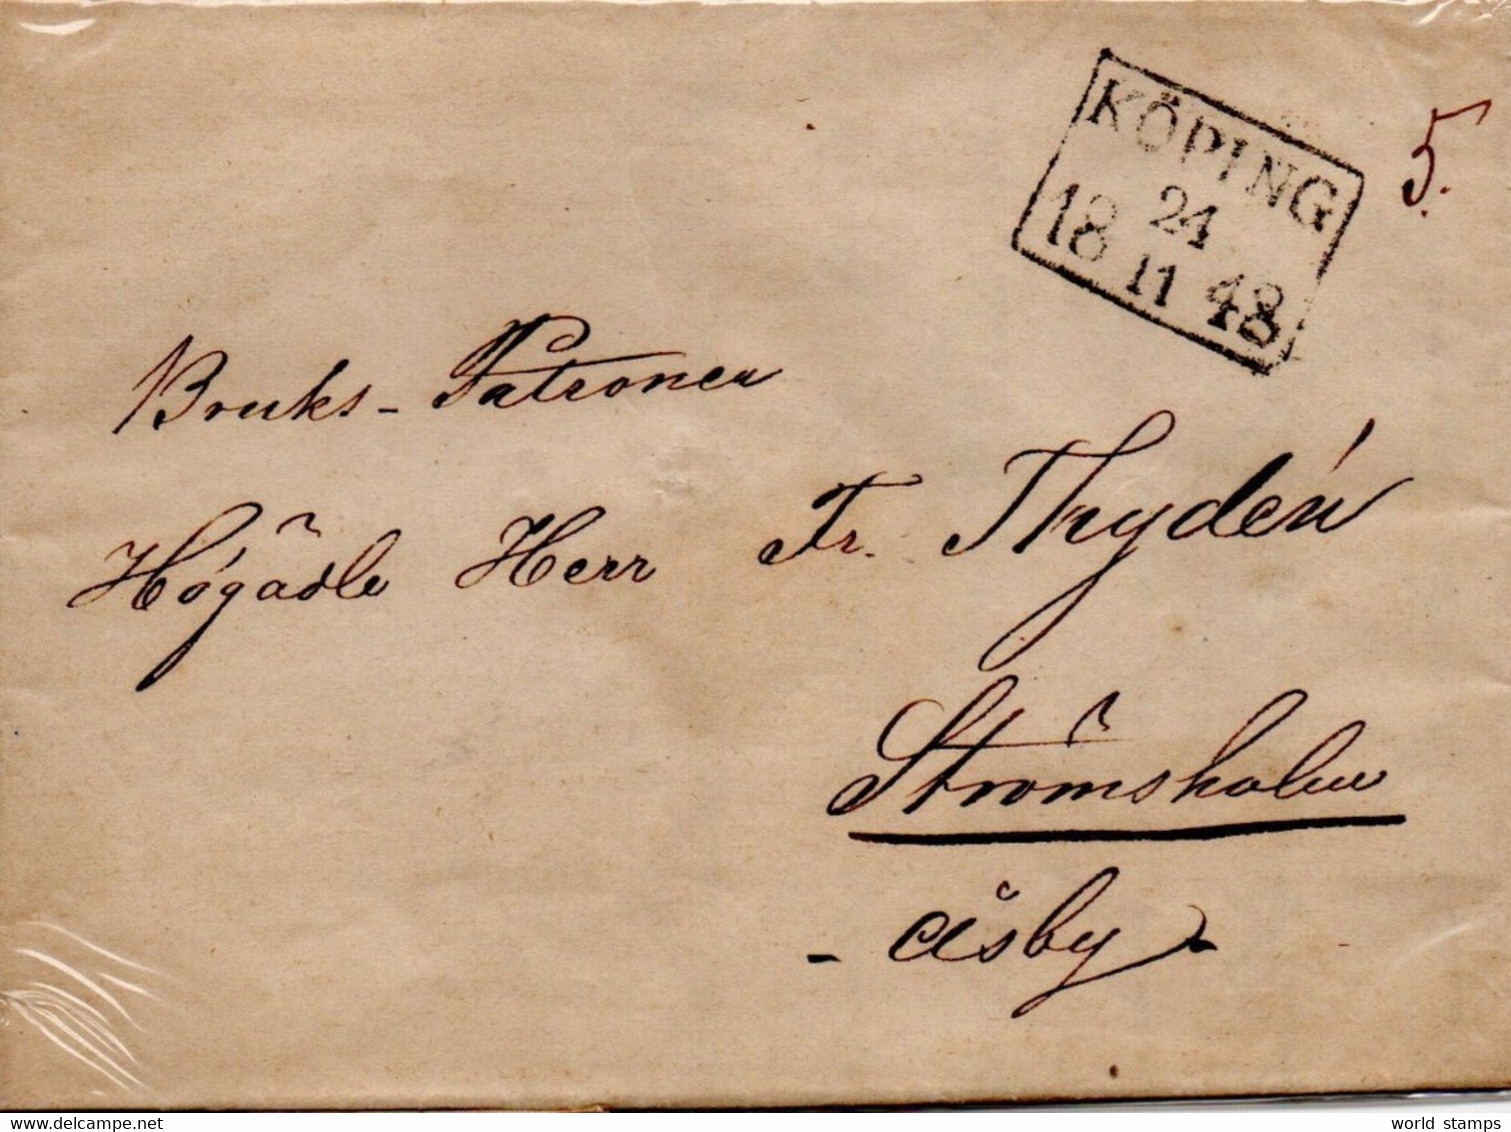 SUEDE 24/11/1848 KOPING-STROMSHOLM - ... - 1855 Voorfilatelie